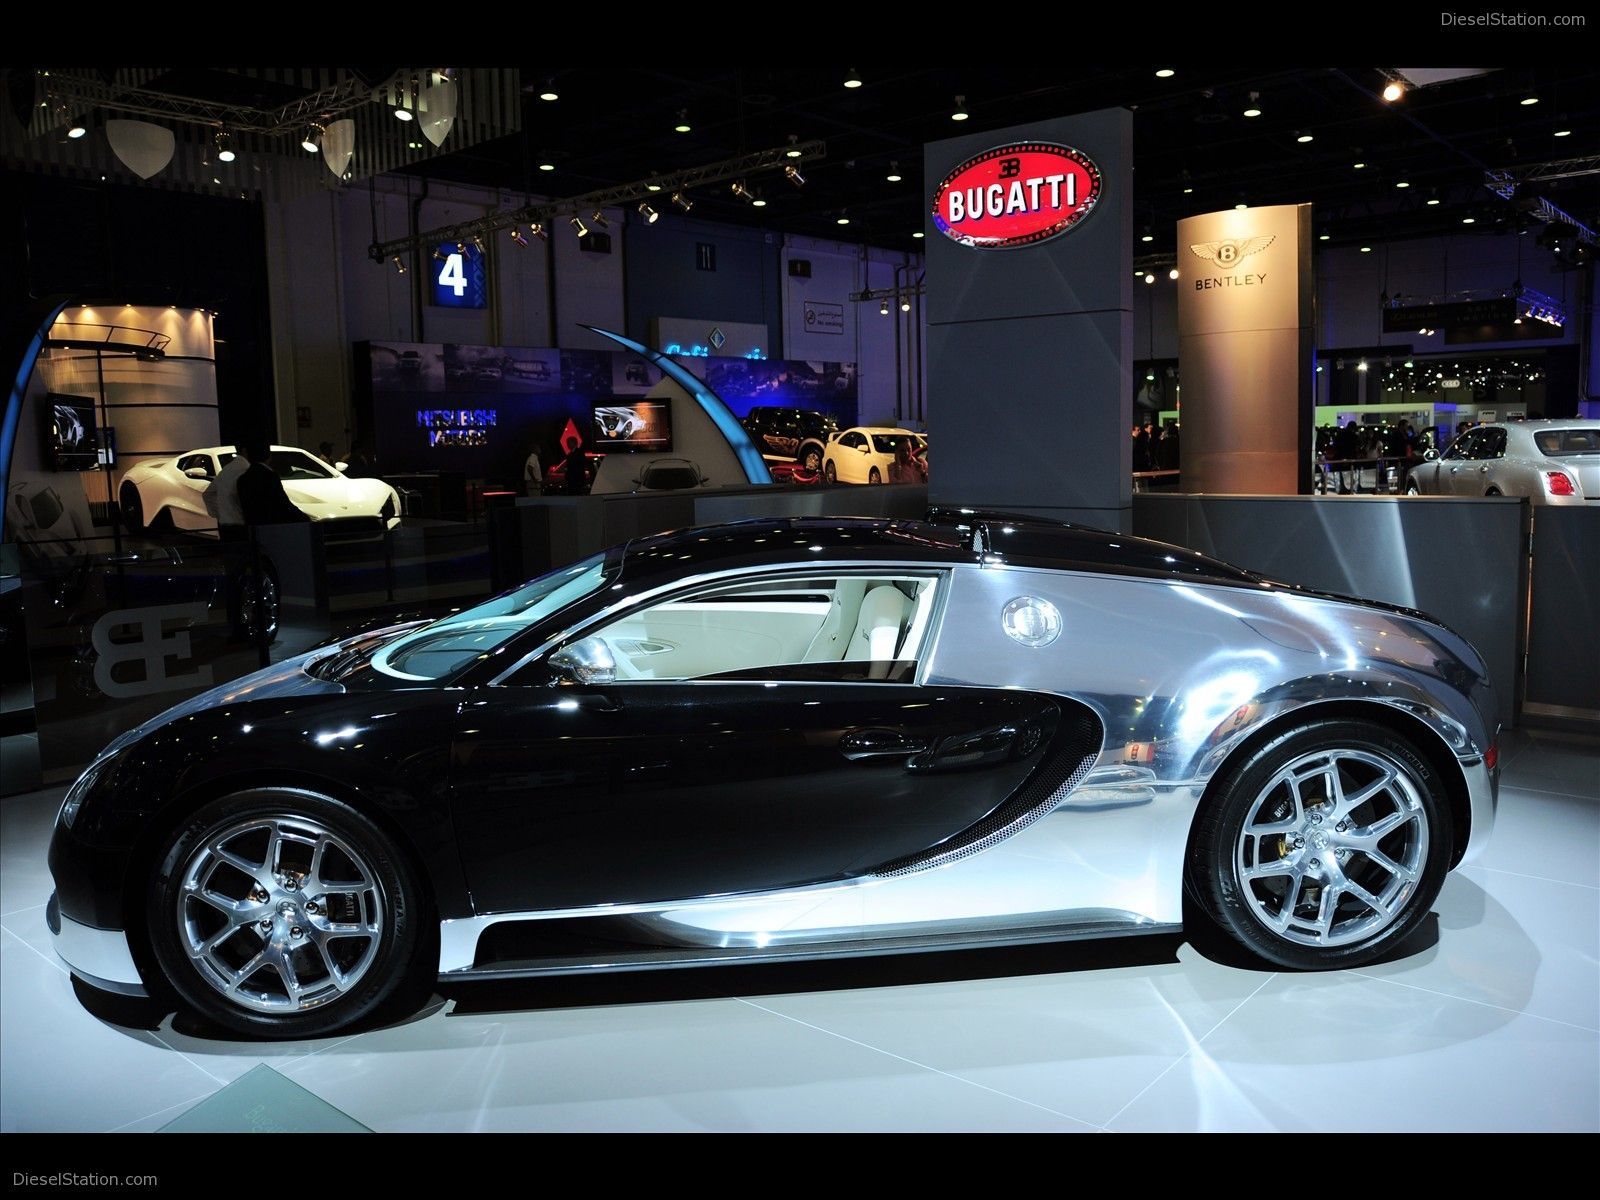 Bugatti Veyron Centenary Special Editon Dubai Exotic Car Wallpaper